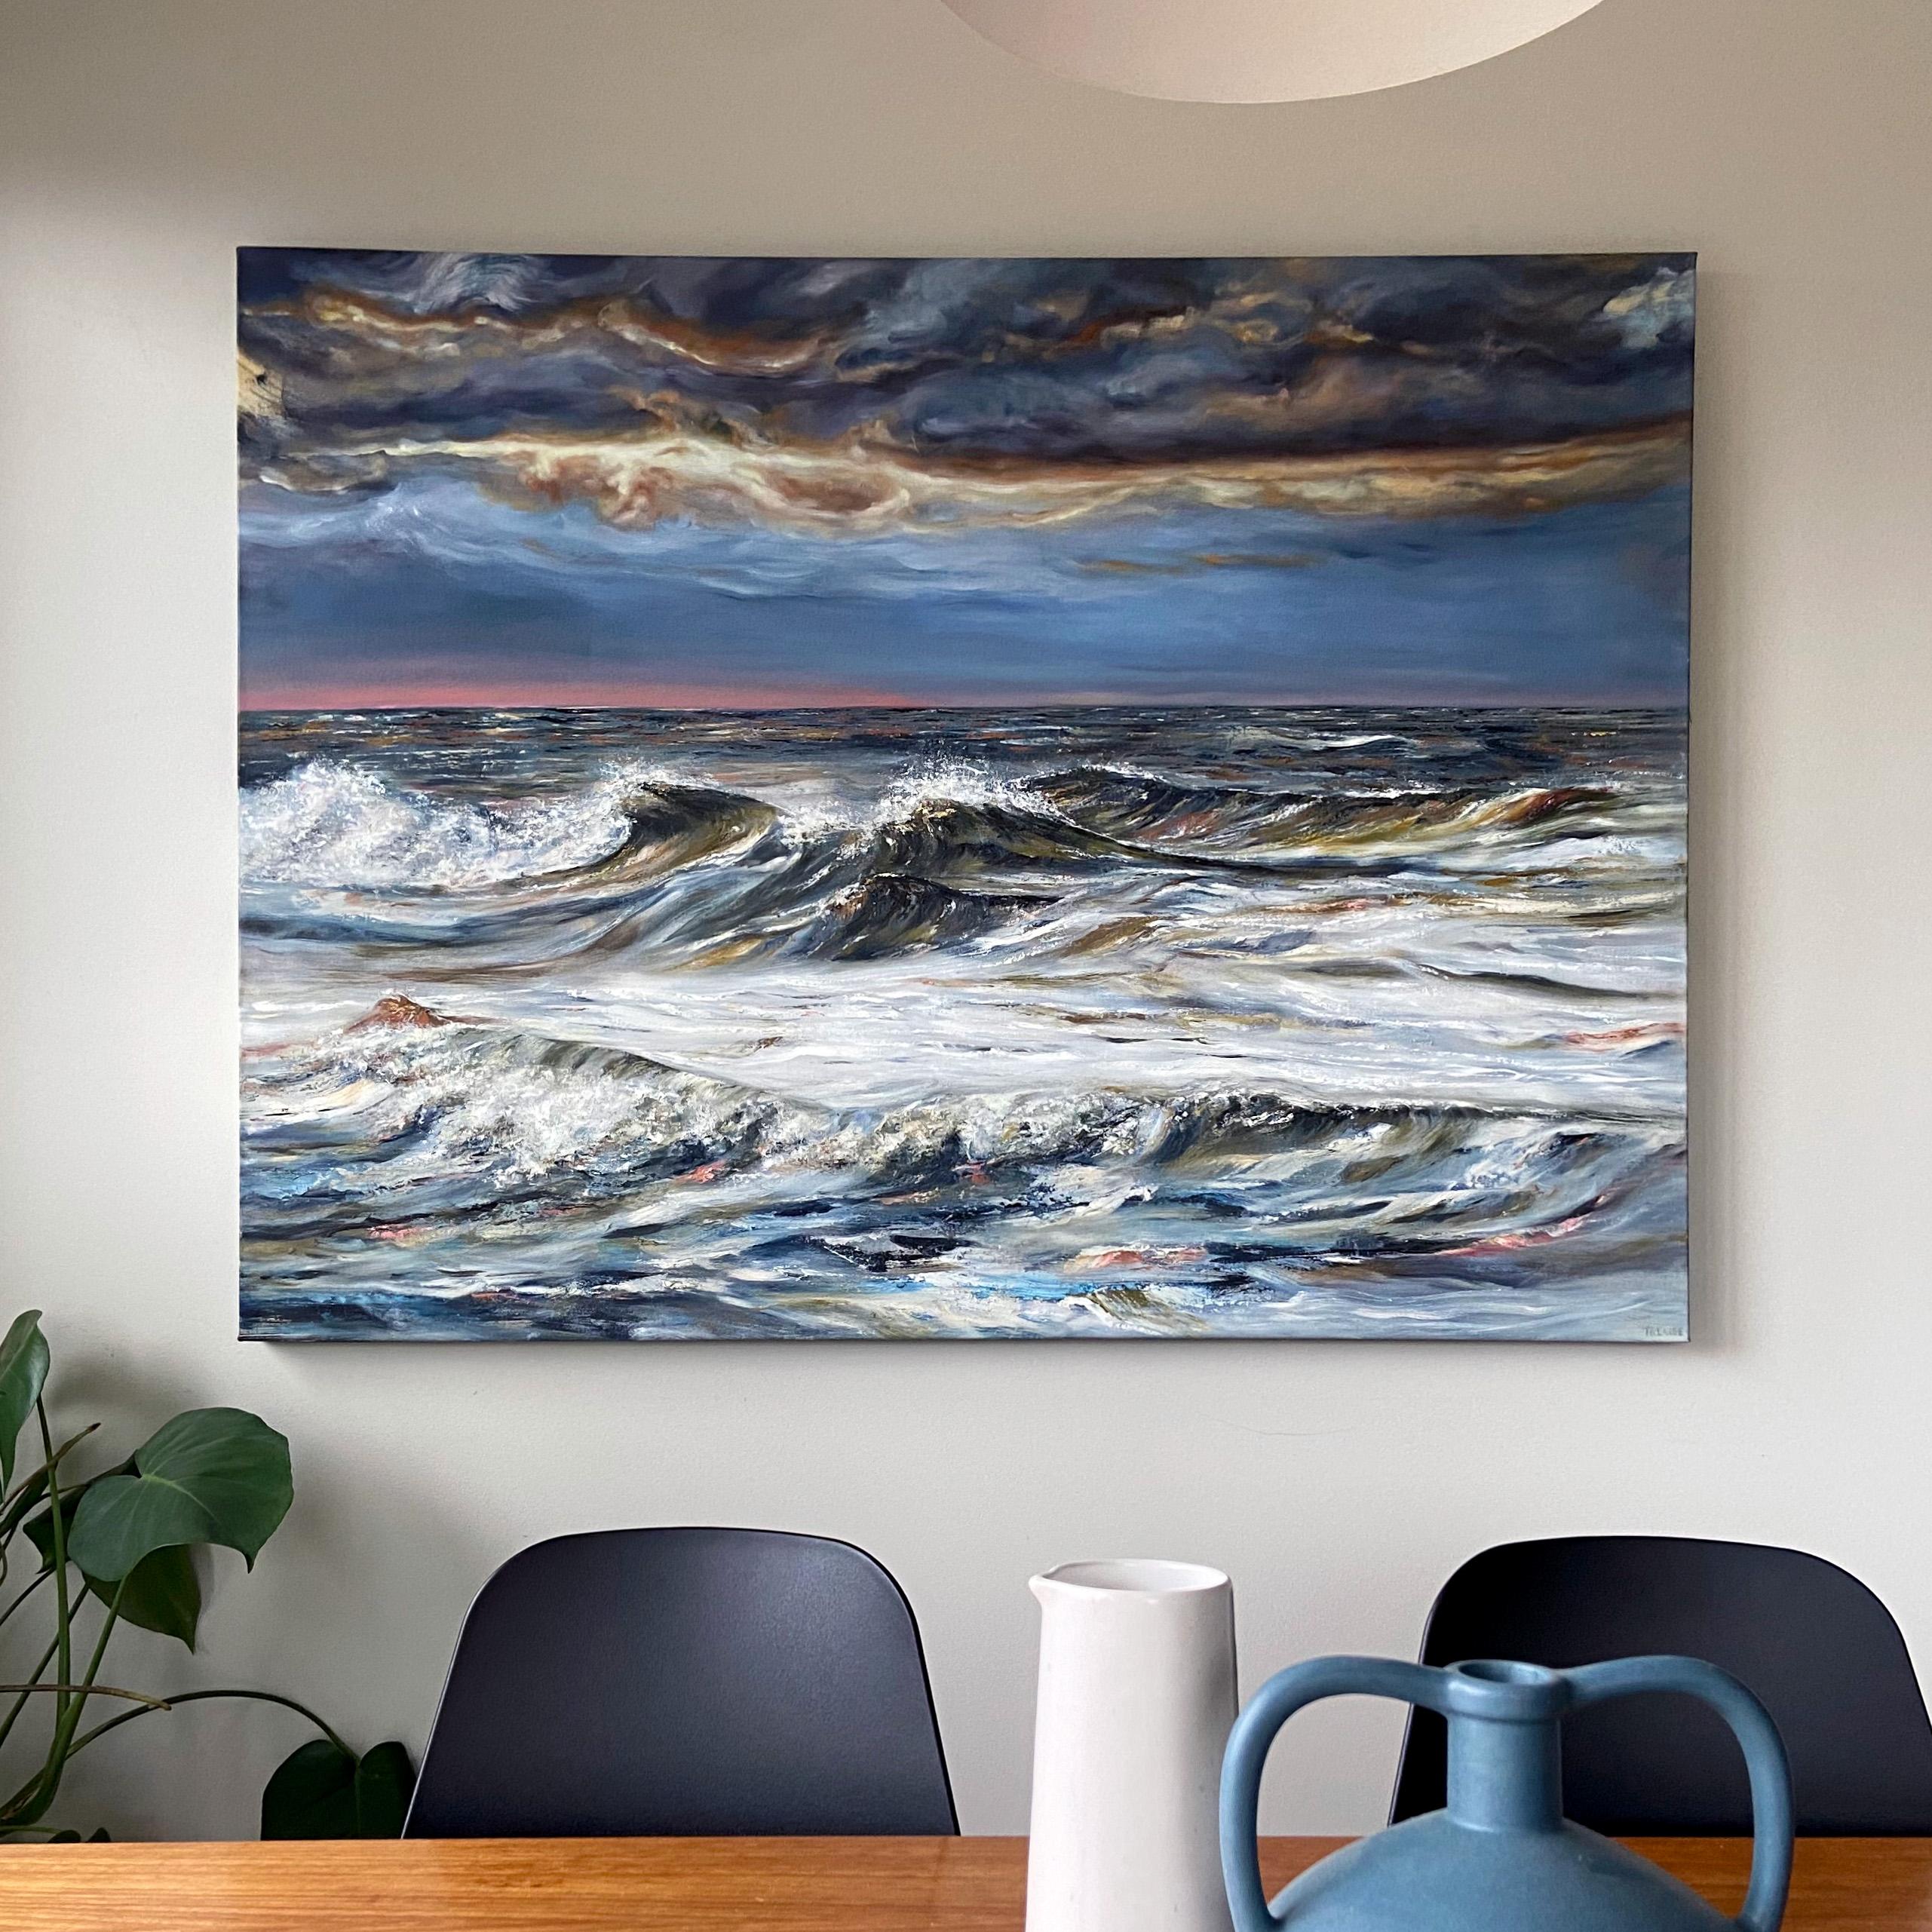 <p>Commentaires de l'artisteCette peinture mixte capture un paysage marin orageux avec des vagues énergiques et un ciel dramatique.<br> Le mélange de peinture à l'huile, d'encre et de cire froide crée une surface texturée, ajoutant de la profondeur